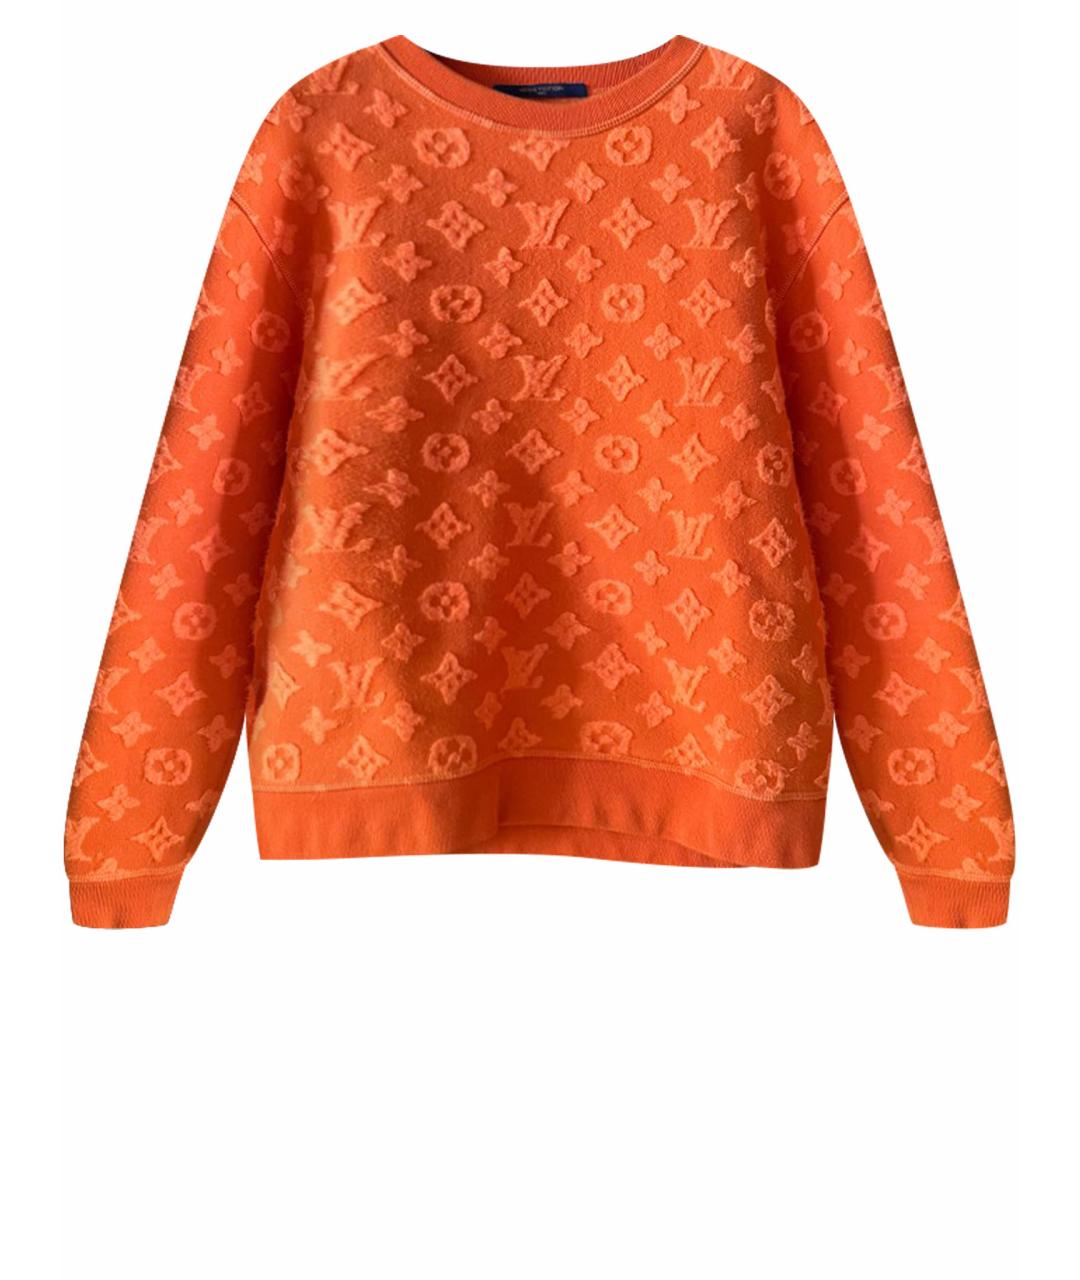 LOUIS VUITTON PRE-OWNED Оранжевый джемпер / свитер, фото 1